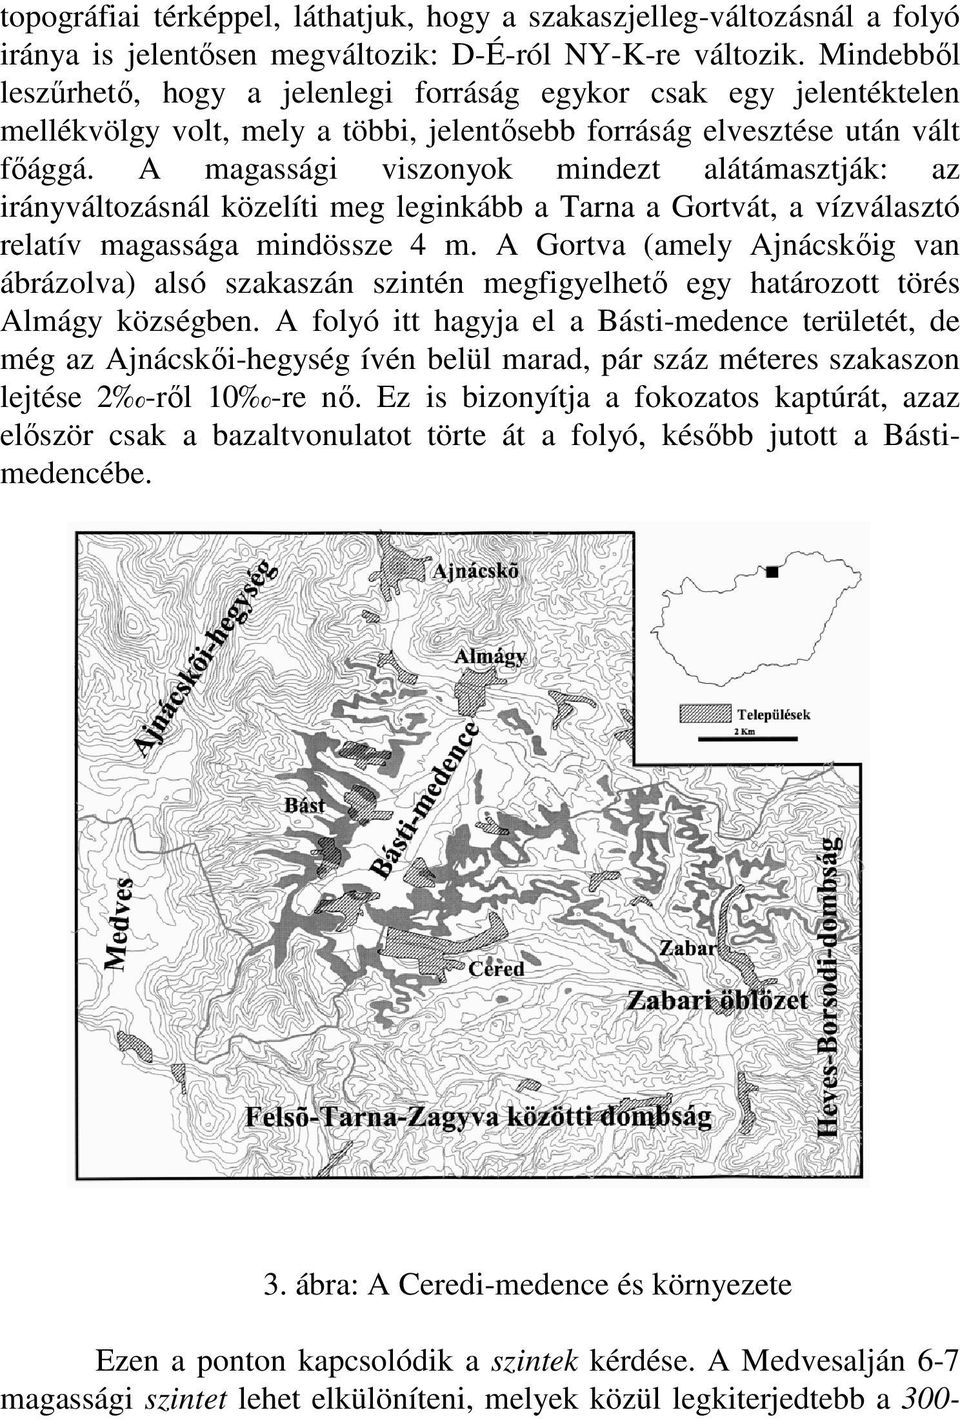 A magassági viszonyok mindezt alátámasztják: az irányváltozásnál közelíti meg leginkább a Tarna a Gortvát, a vízválasztó relatív magassága mindössze 4 m.